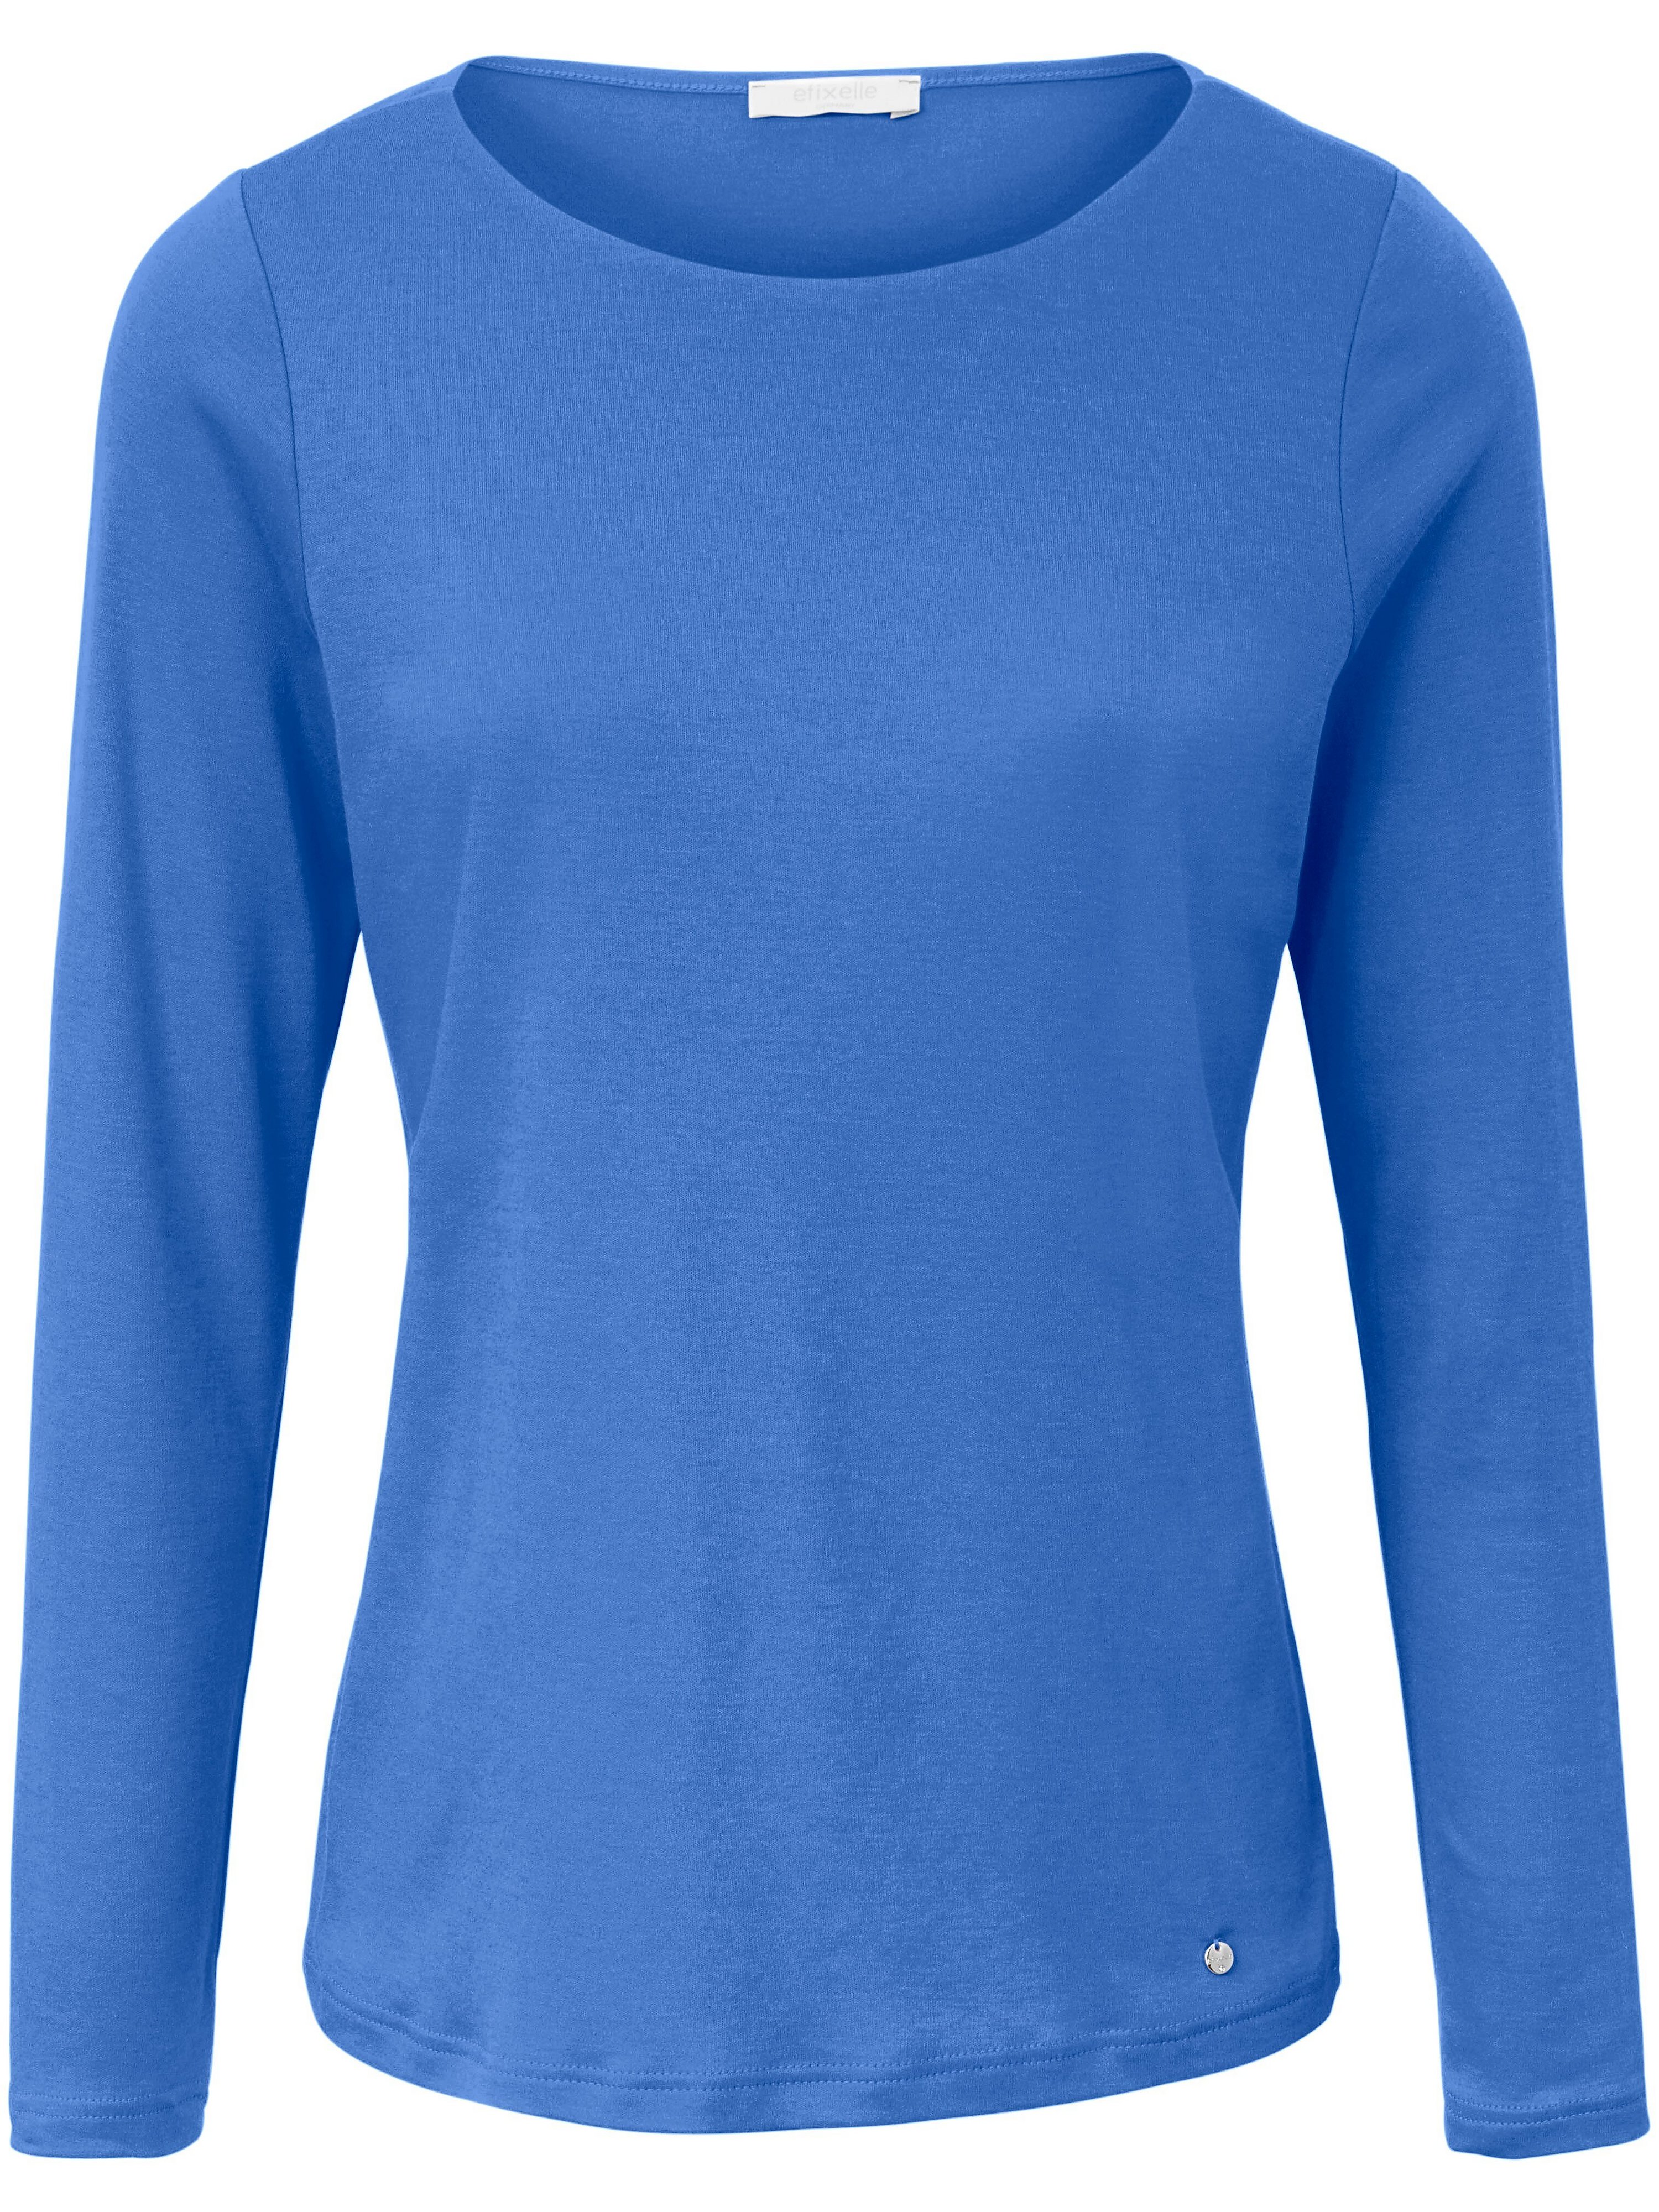 Le T-shirt manches longues 100% coton  Efixelle bleu taille 38